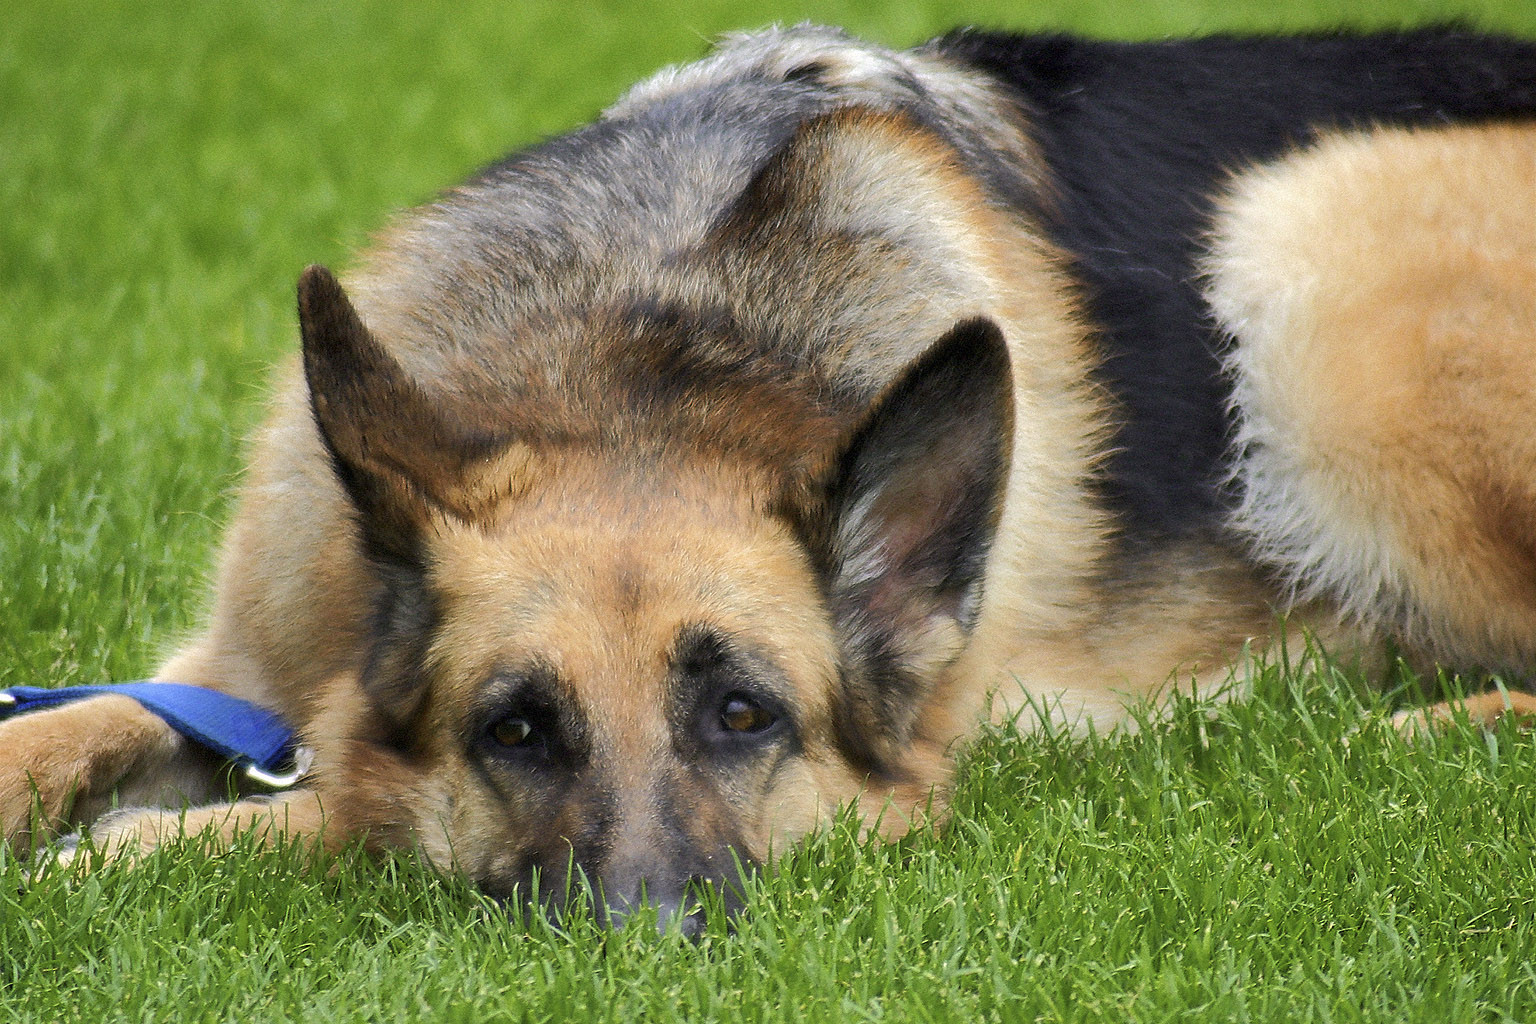 Duitse herdershond heeft last van longwormen en ligt daardoor languit in het gras